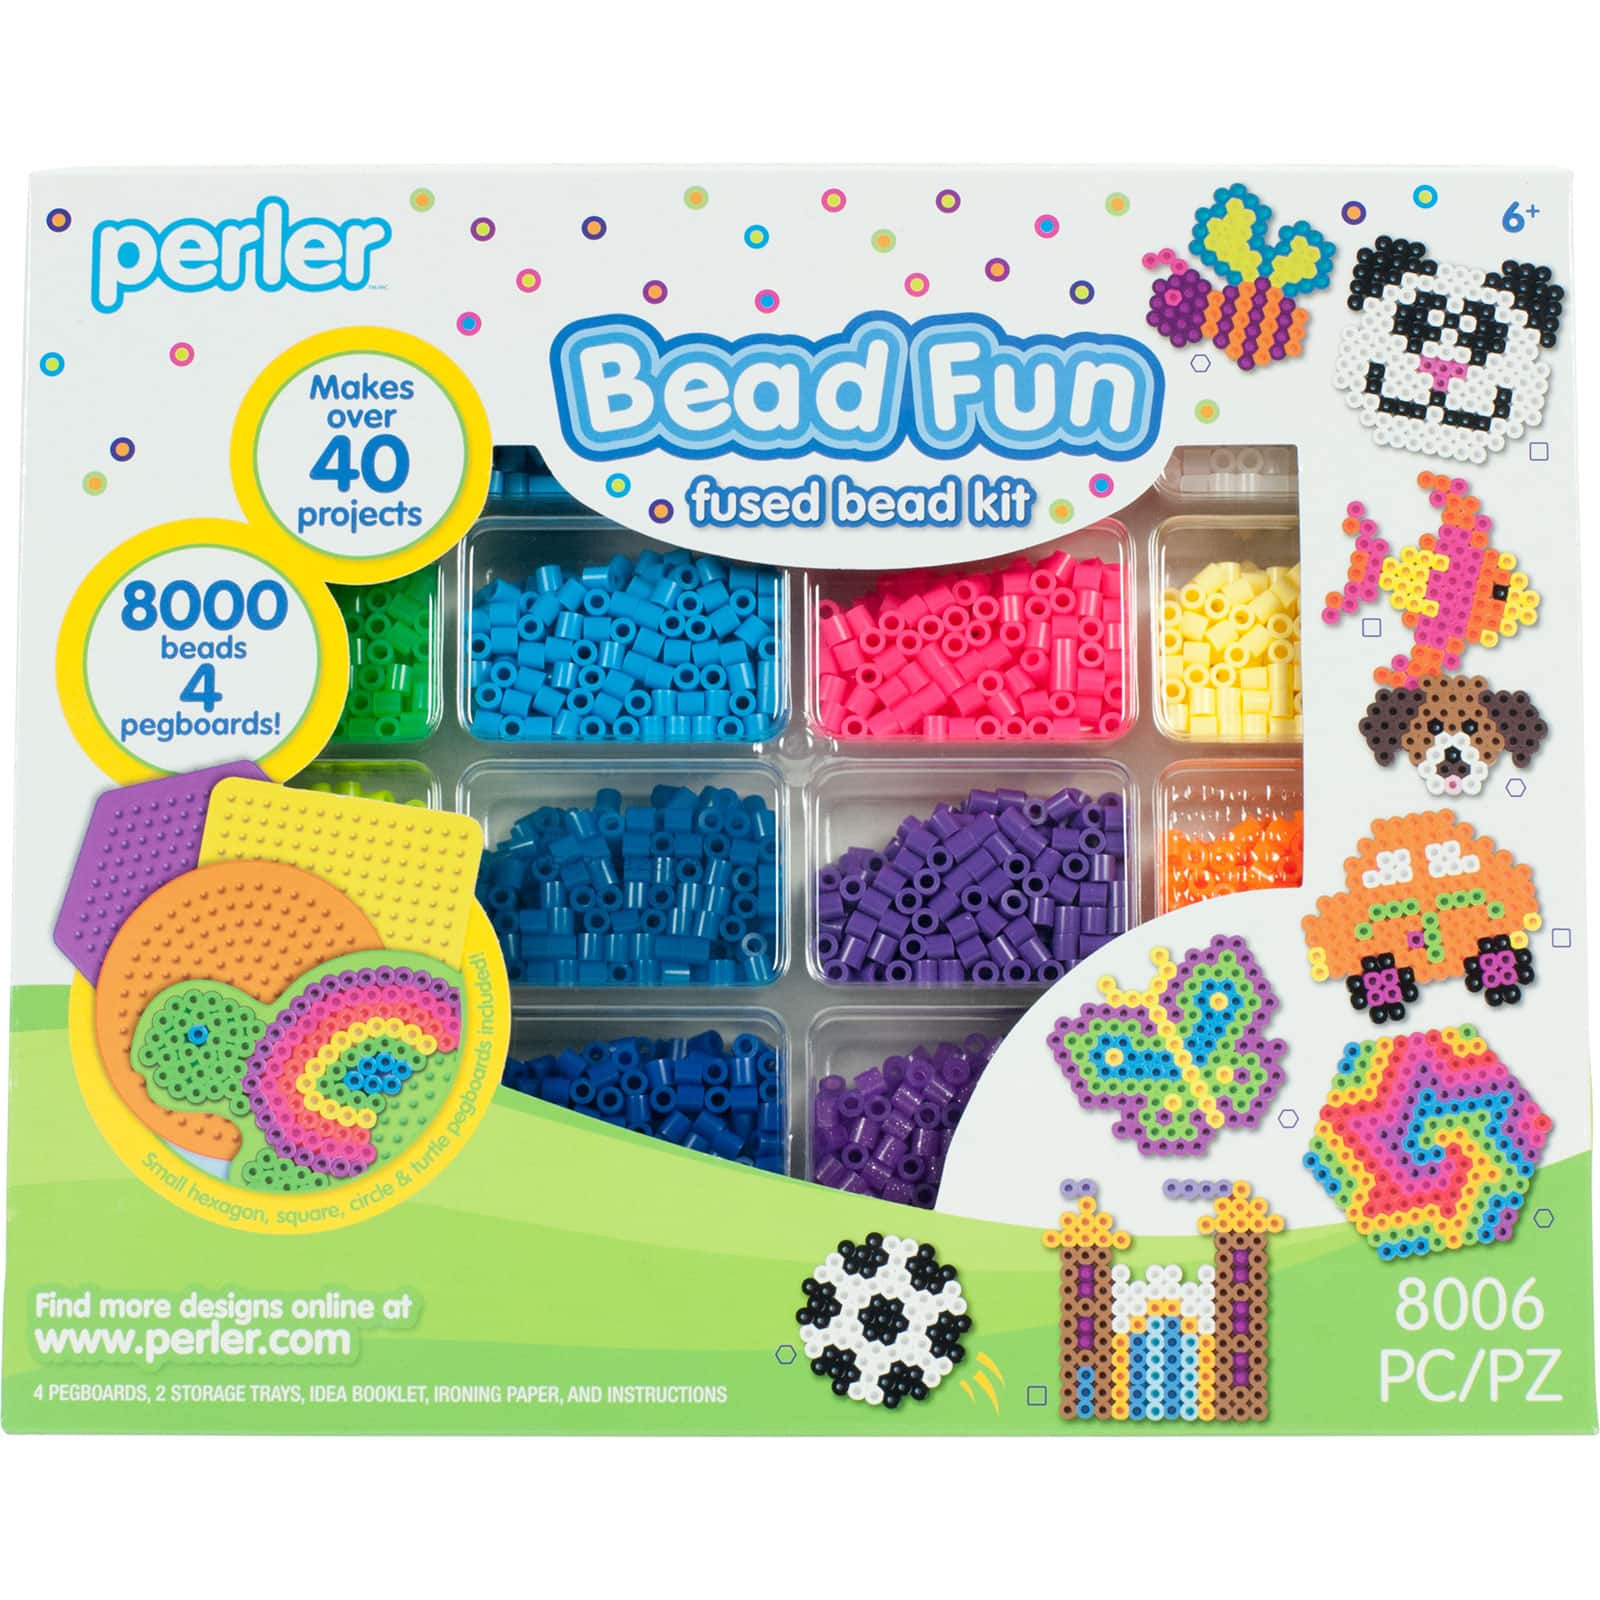 6 Pack: Perler&#x2122; Bead Fun Fused Bead Kit